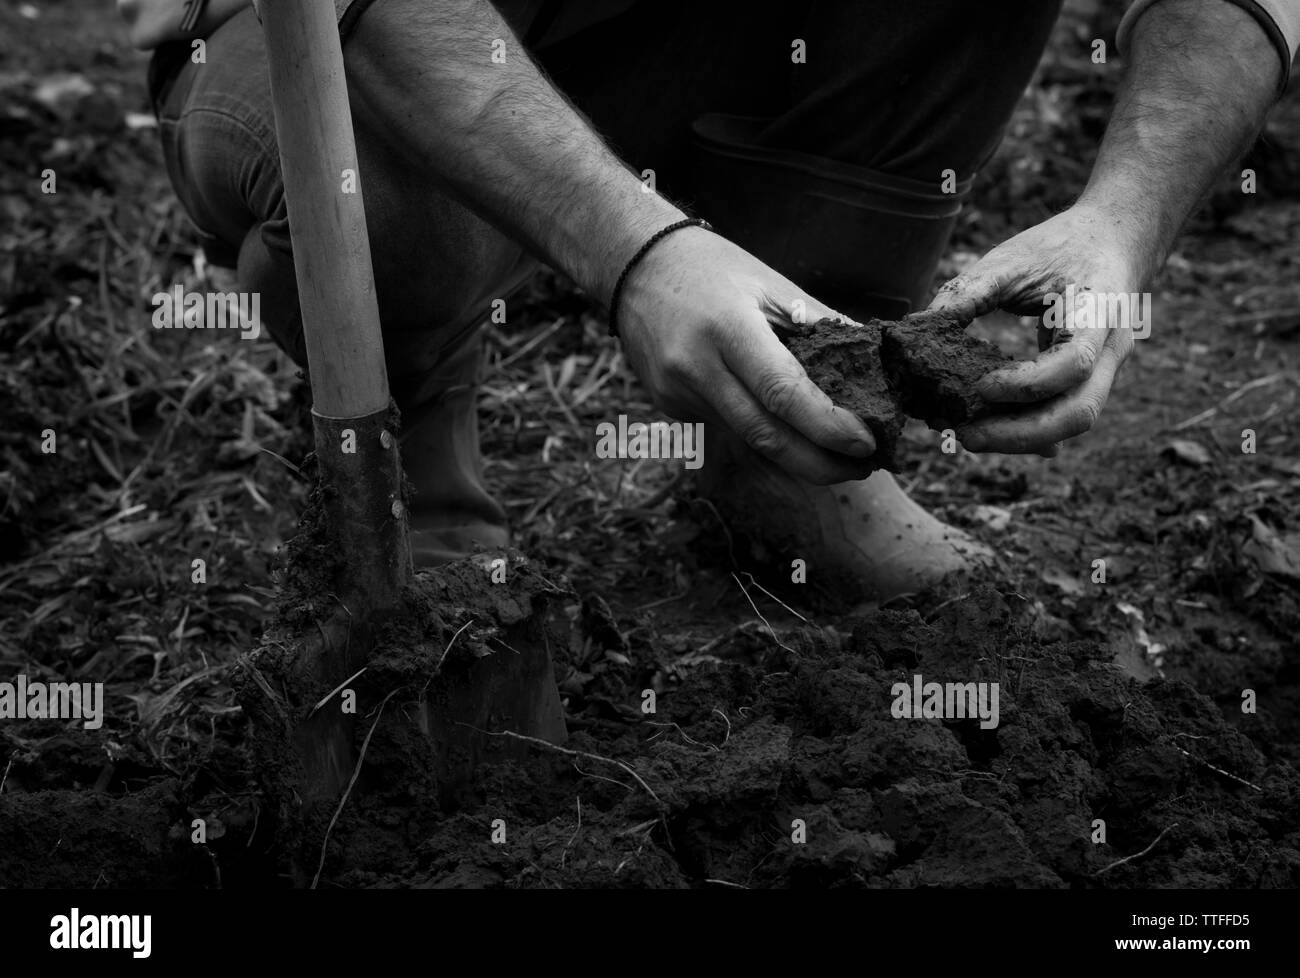 Die starken Hände, die graben die Feder Boden vegetab zu pflegen Stockfoto